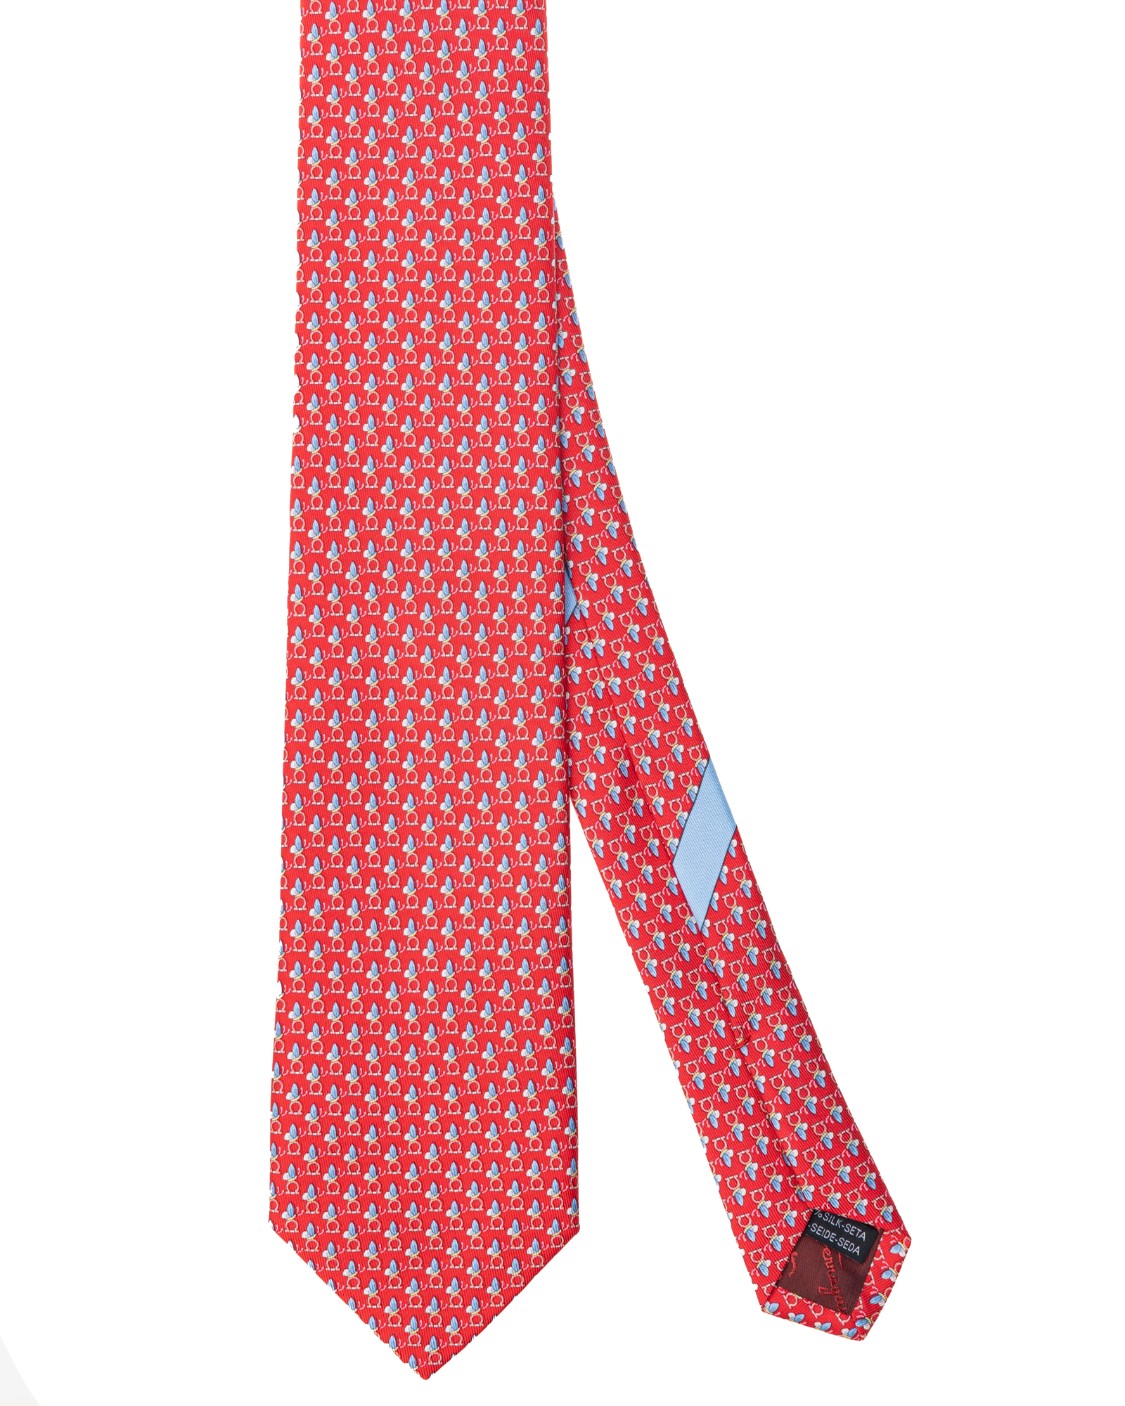 shop SALVATORE FERRAGAMO  Cravatta: Salvatore Ferragamo cravatta in jacquard di seta.
Decorata da un pattern di mini farfalle.
Fondo a 7 cm.
Composizione: 100% seta.
Made in Italy.. 350489 4 OLGA-004 749635 number 2544473